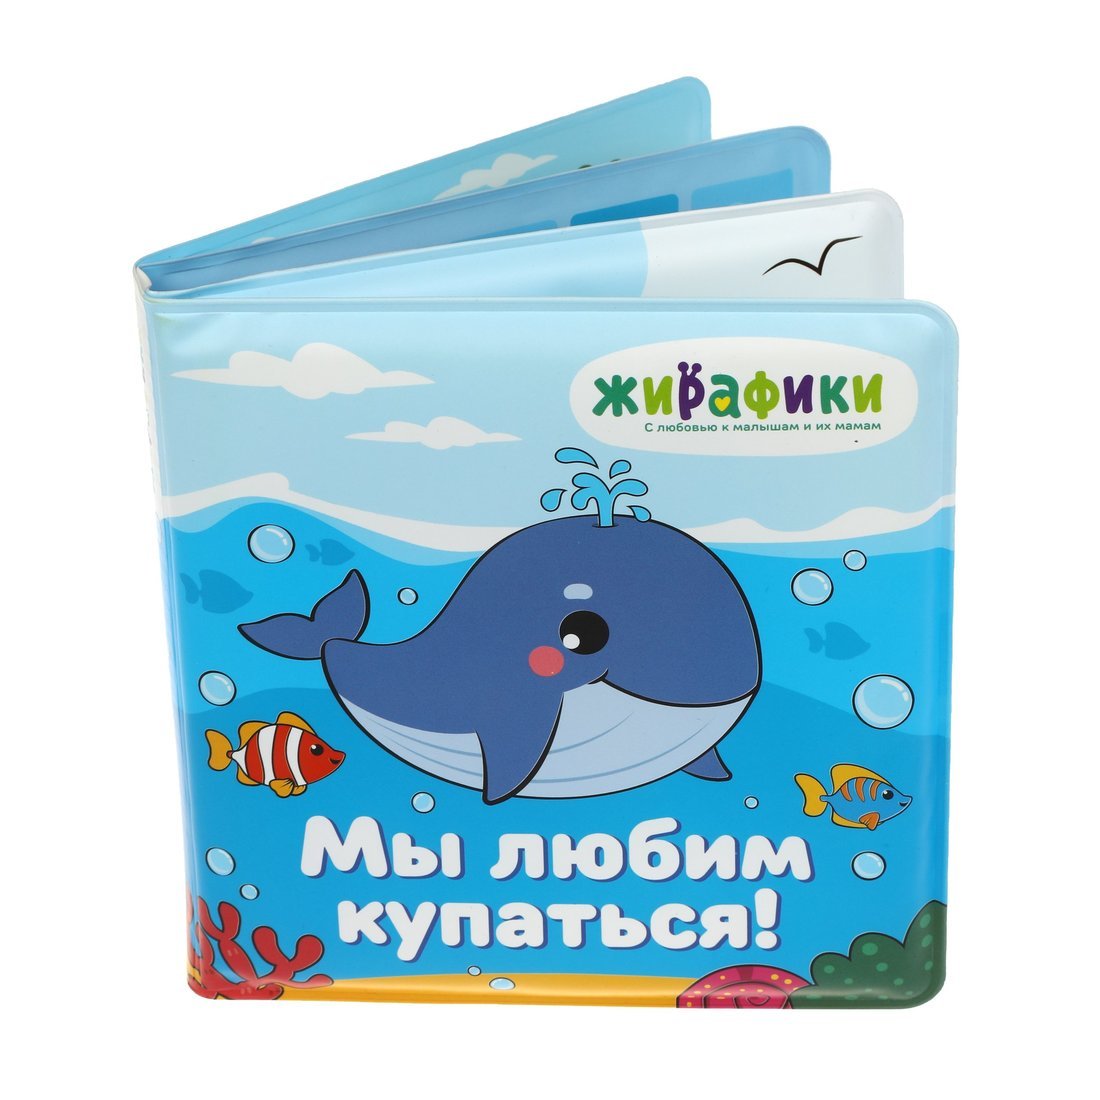 Книжка для купания 939830 Мы любим купаться 14*14см ПВХ со стишками ТМ Жирафики - Пермь 